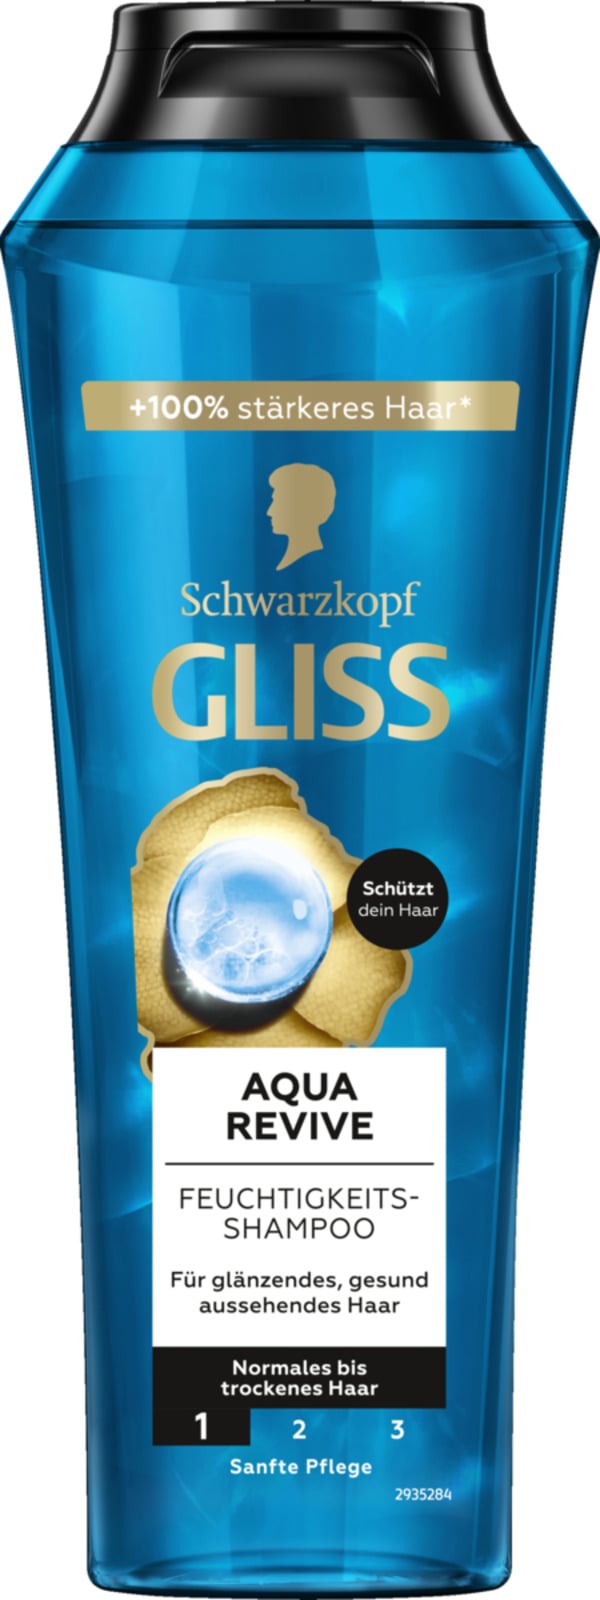 Bild 1 von Gliss Aqua Revive Shampoo